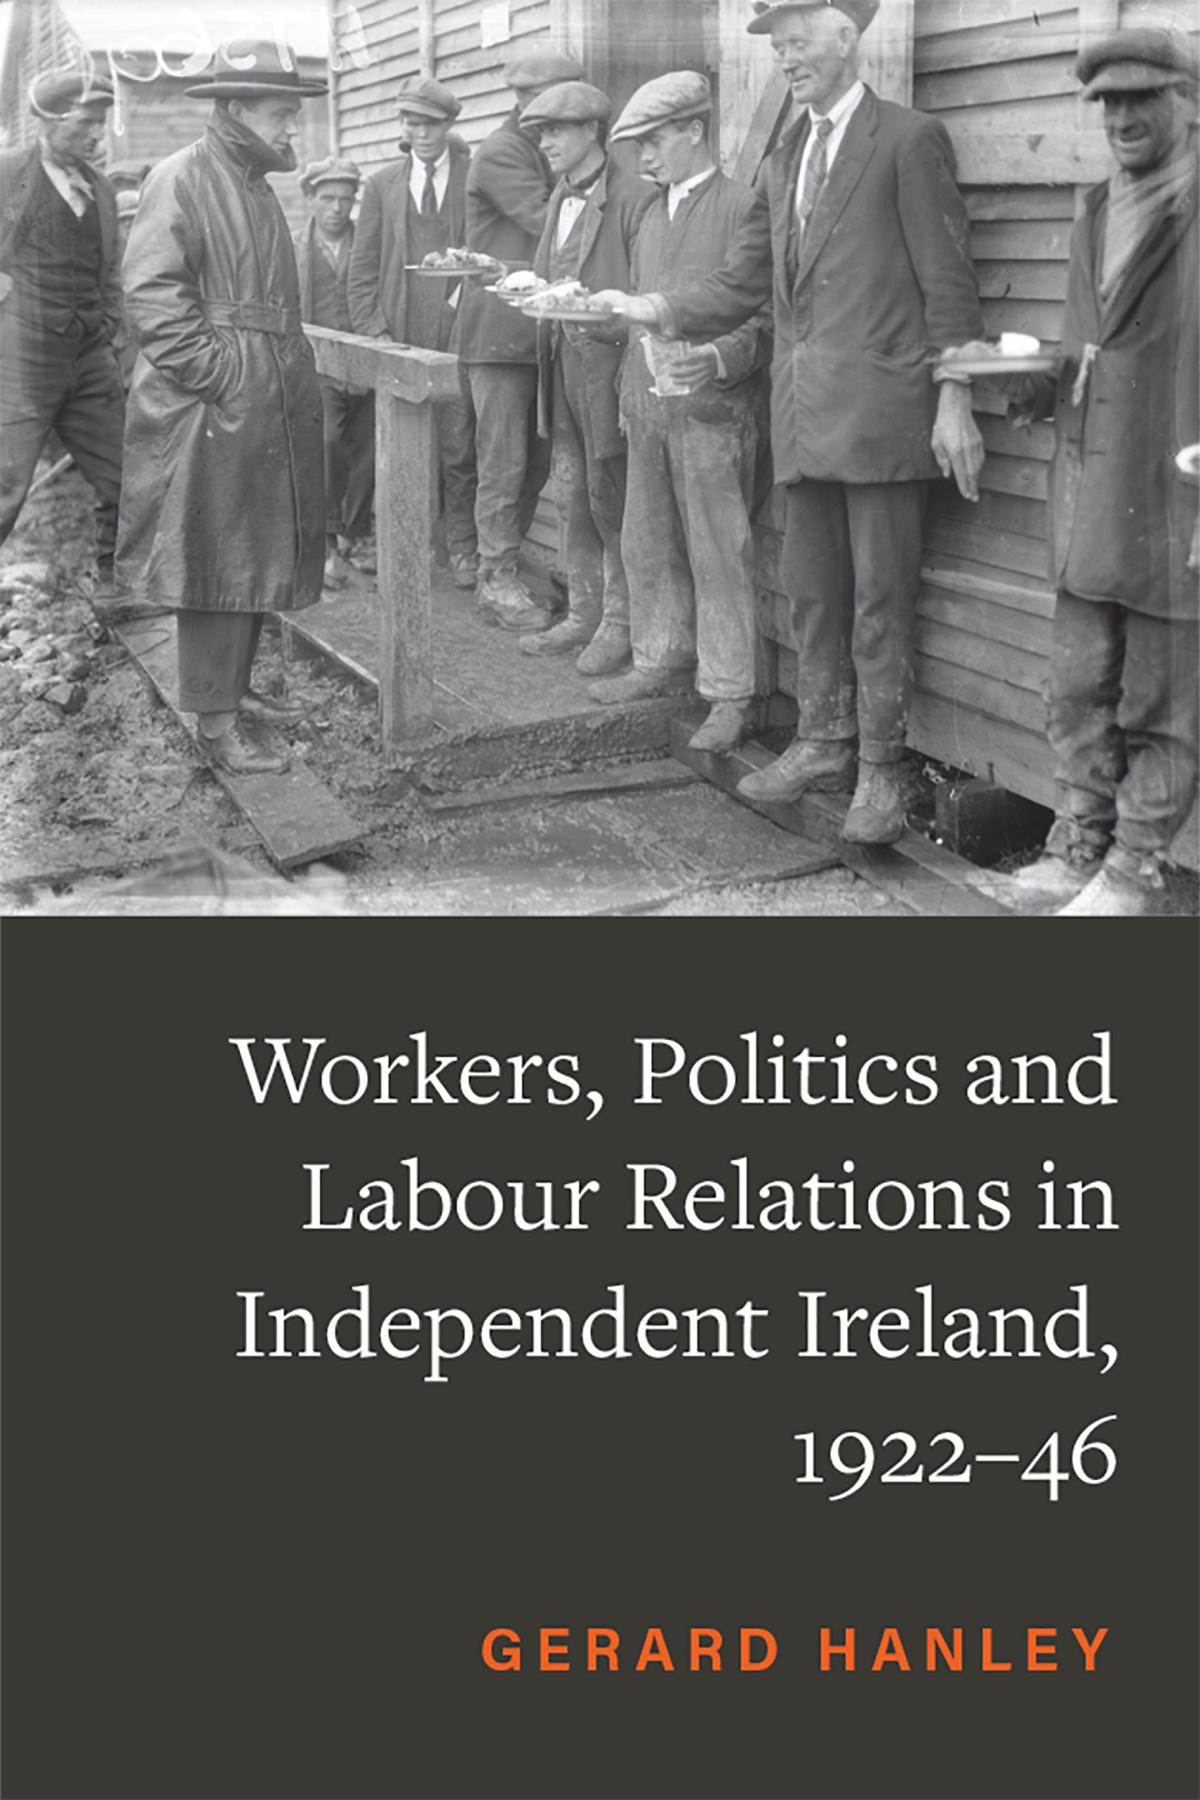 工人、政治和劳资关系独立爱尔兰,1922-46